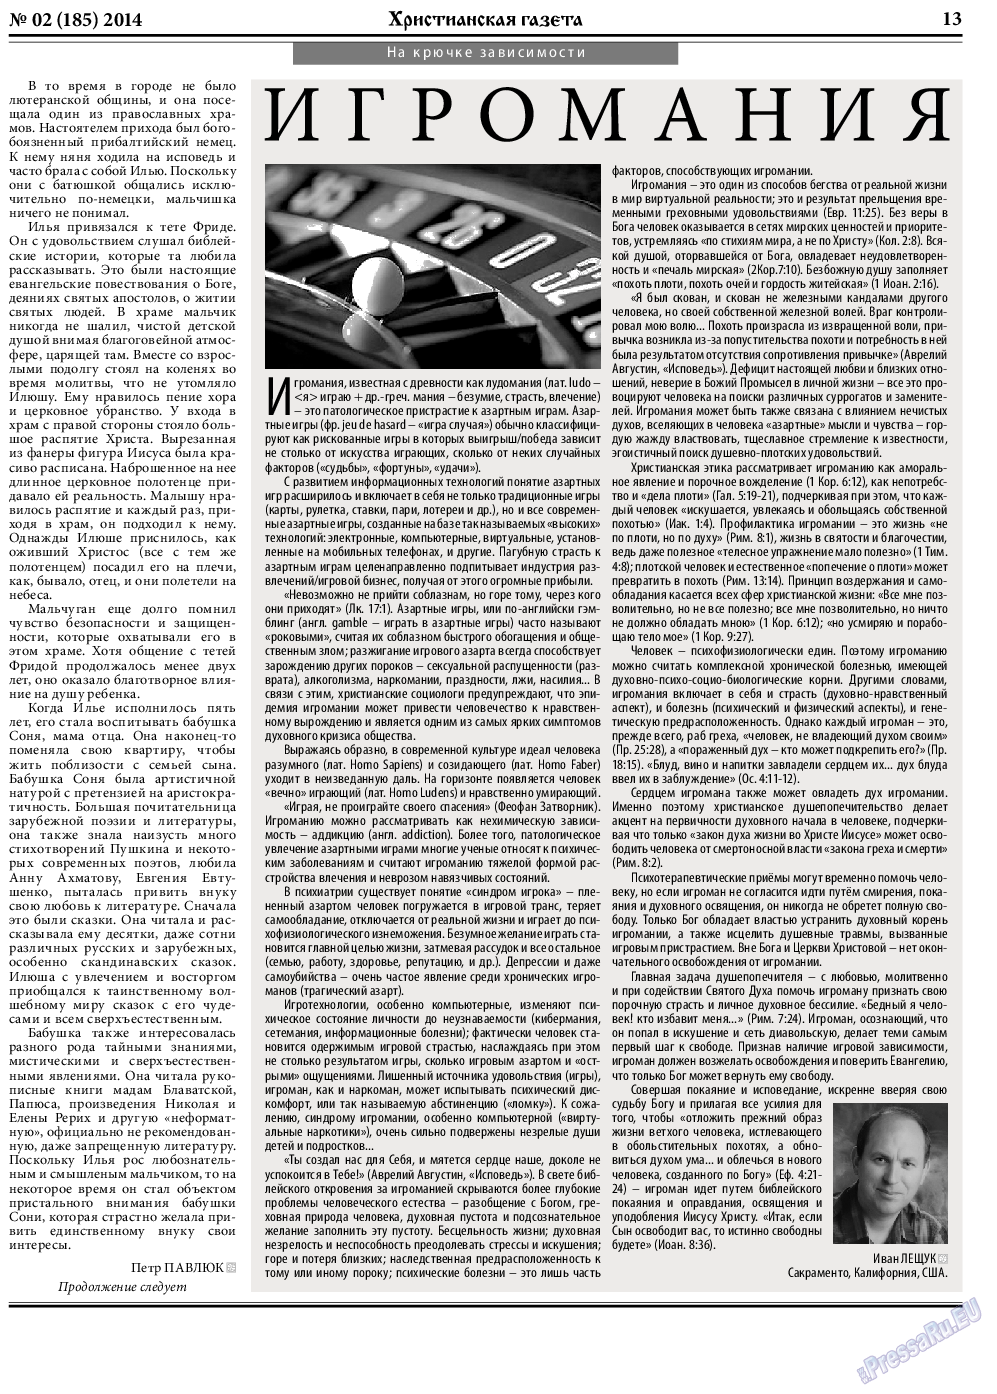 Христианская газета, газета. 2014 №2 стр.21